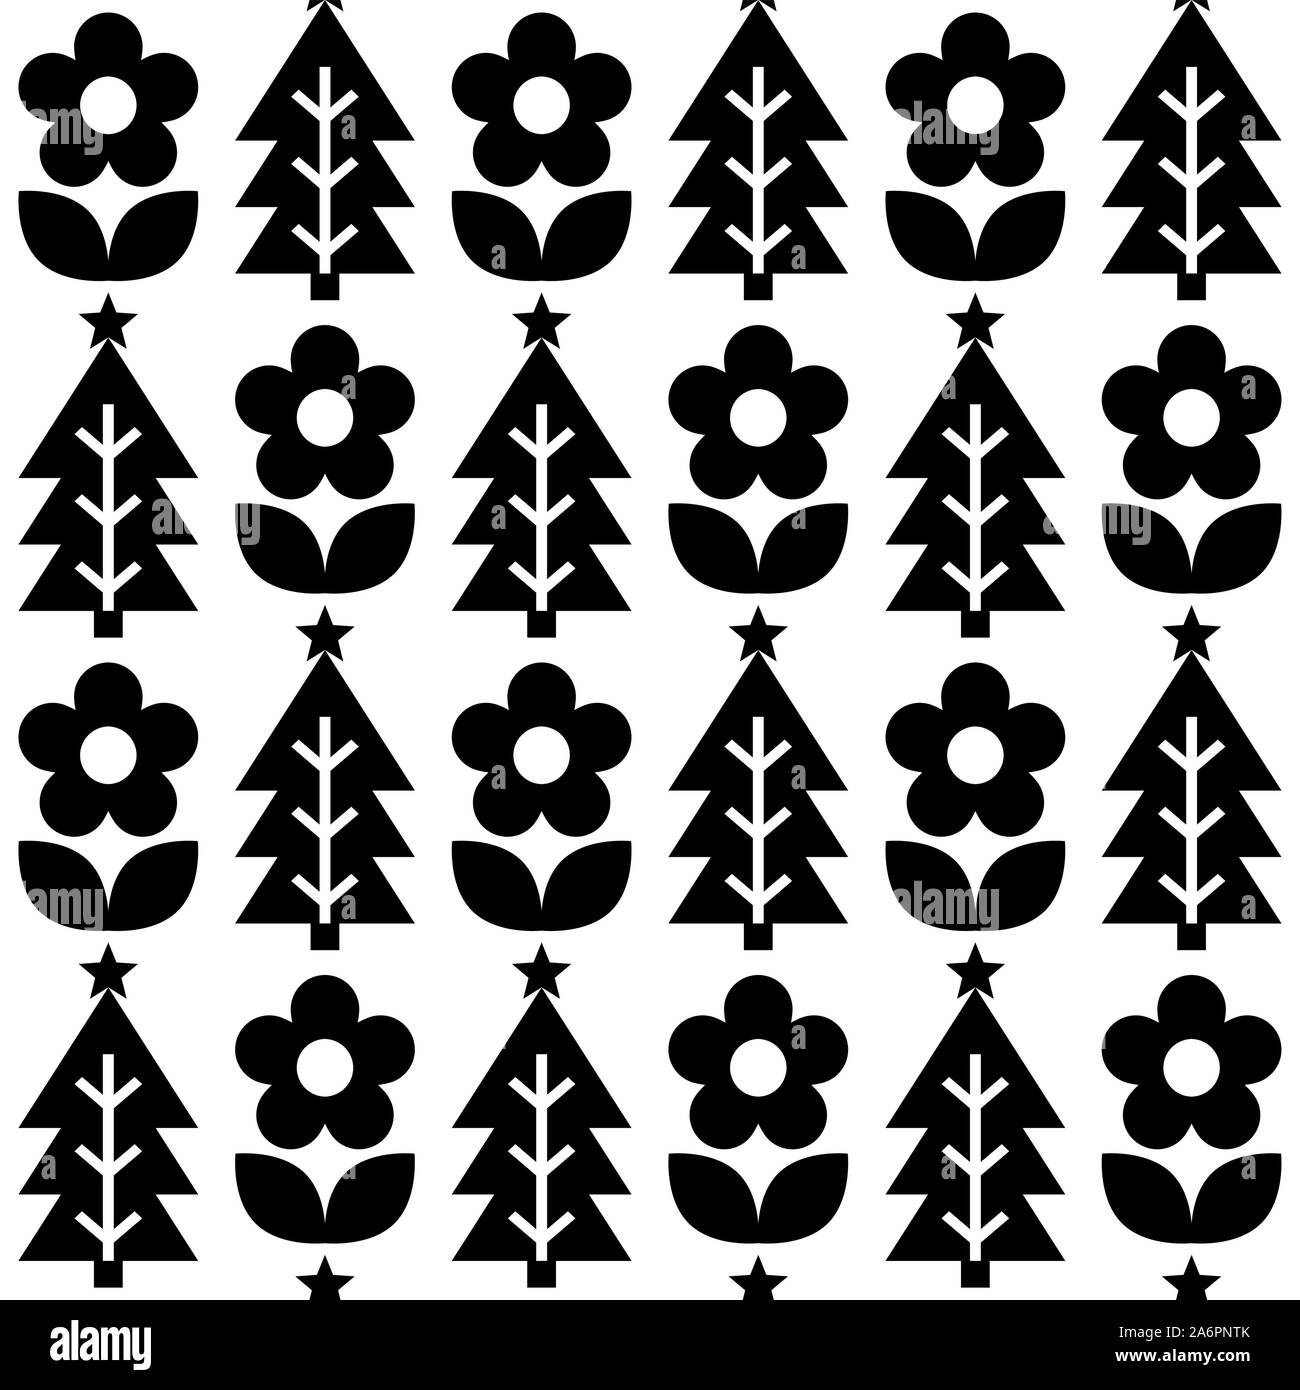 Süße repetitive Nordic Weihnachten Volkskunst Vektor nahtlose Muster, monochrome cute festliche Skandinavisches Design mit Blumen und Weihnachtsbäume. Weihnachten Stock Vektor